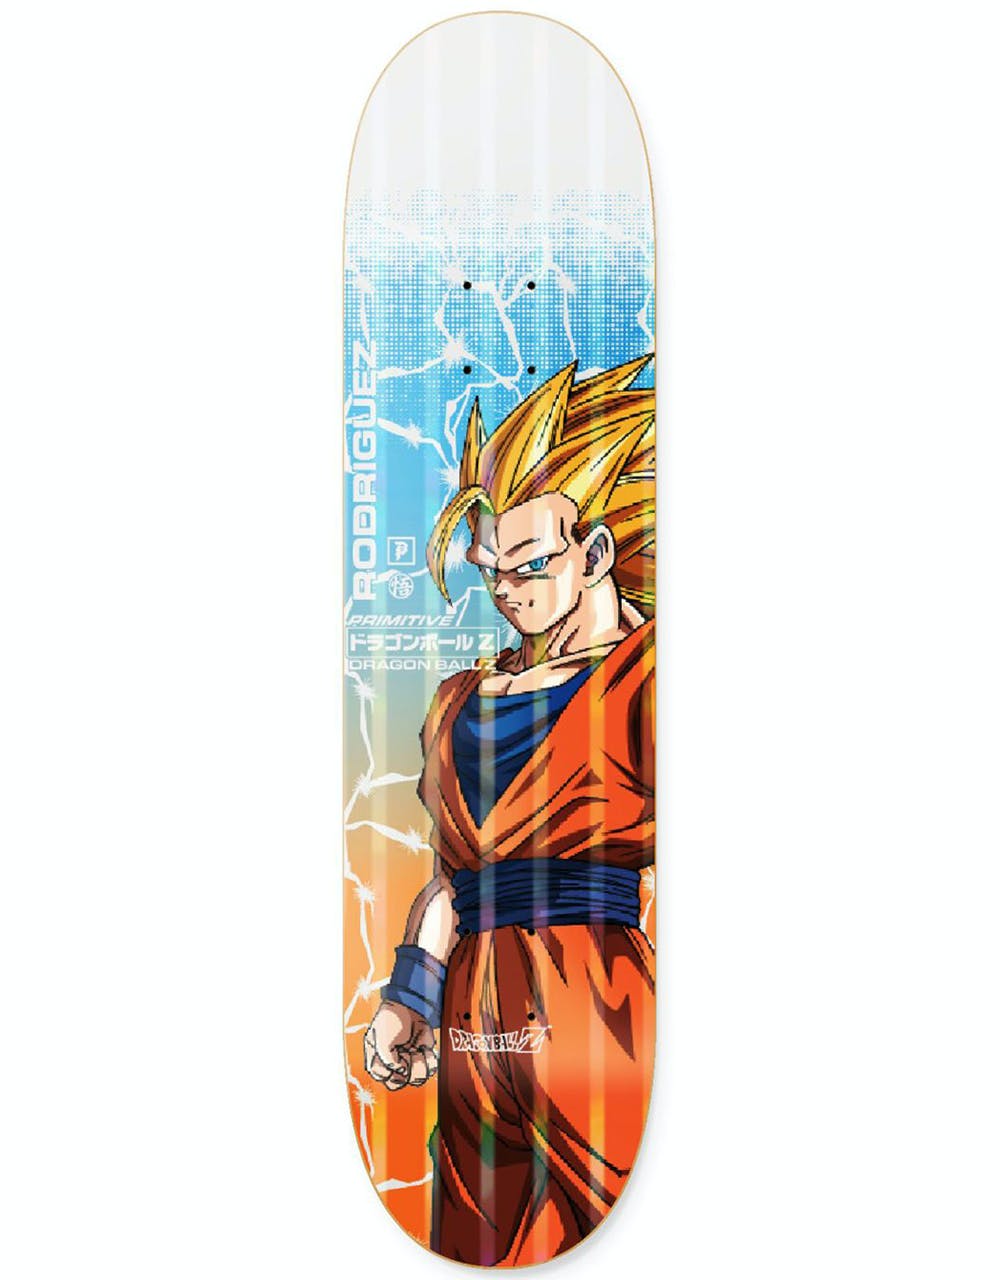 Primitive x Dragon Ball Z Rodriguez Goku Power Level Skateboard Deck - 8.125"